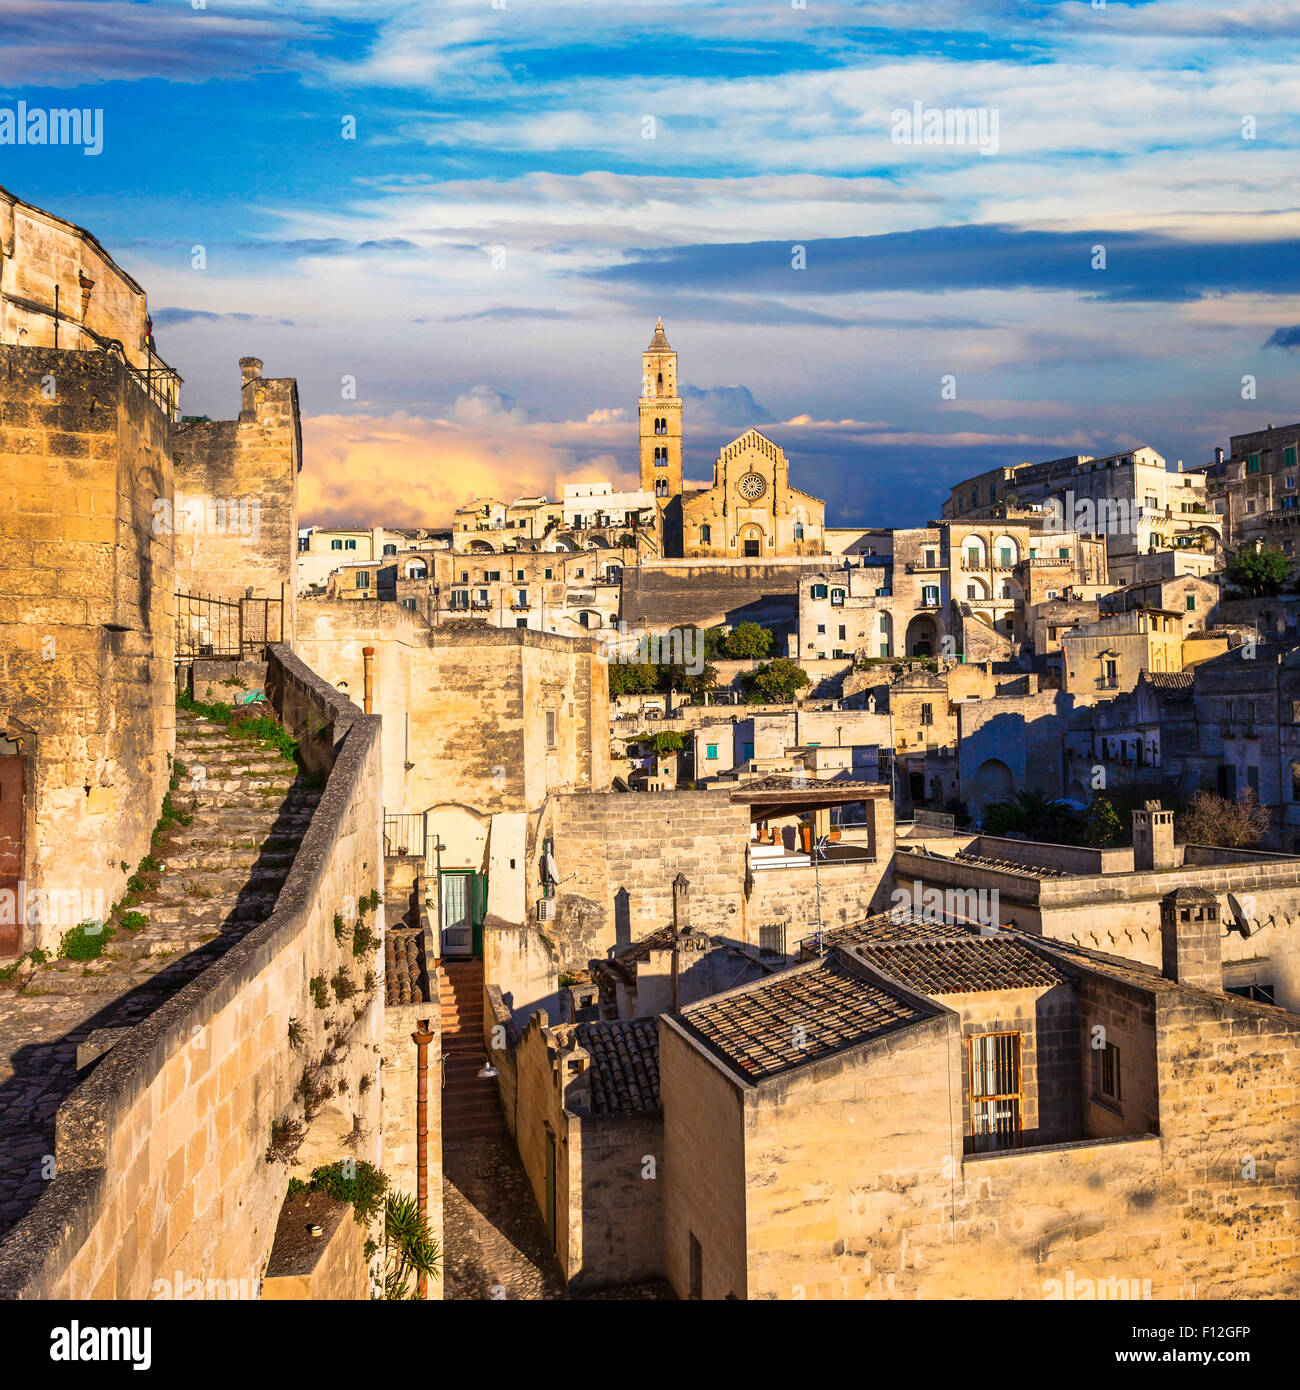 La antigua ciudad de Matera durante la puesta de sol. Basilicata, Italia Foto de stock